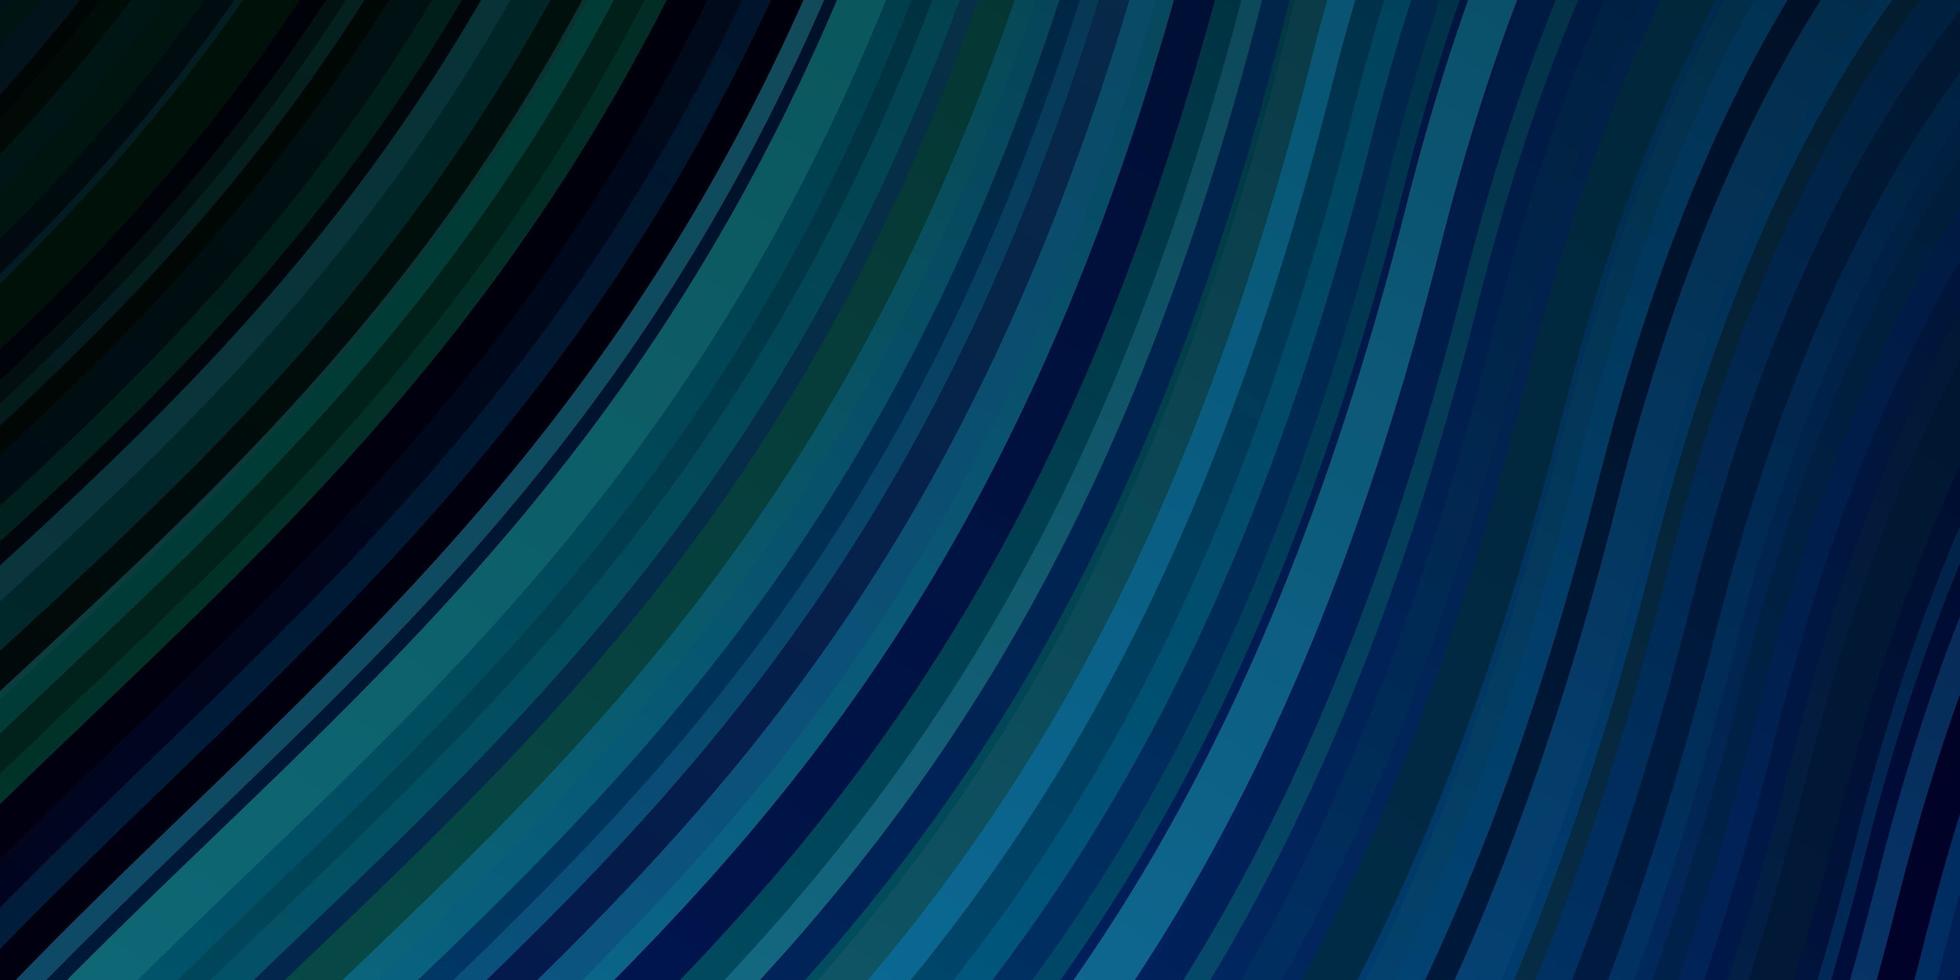 layout de vetor de azul claro e verde com curvas.